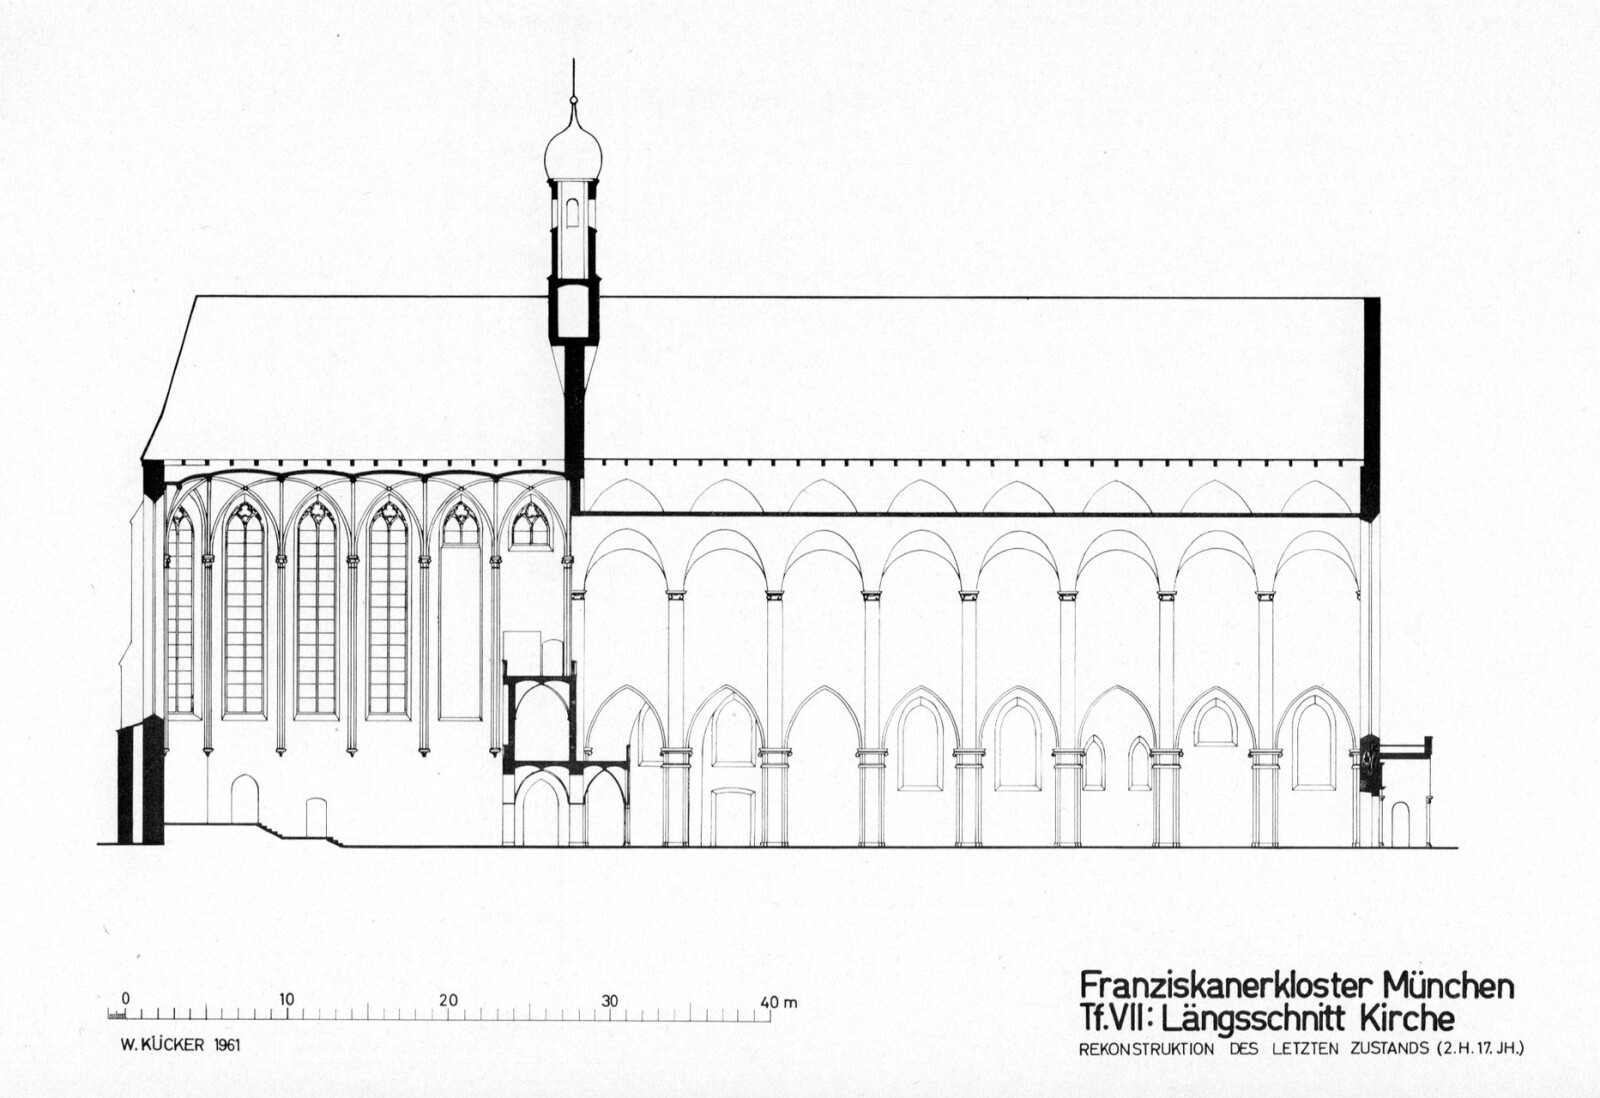 Franziskanerkirche-Langsschnitt.jpeg